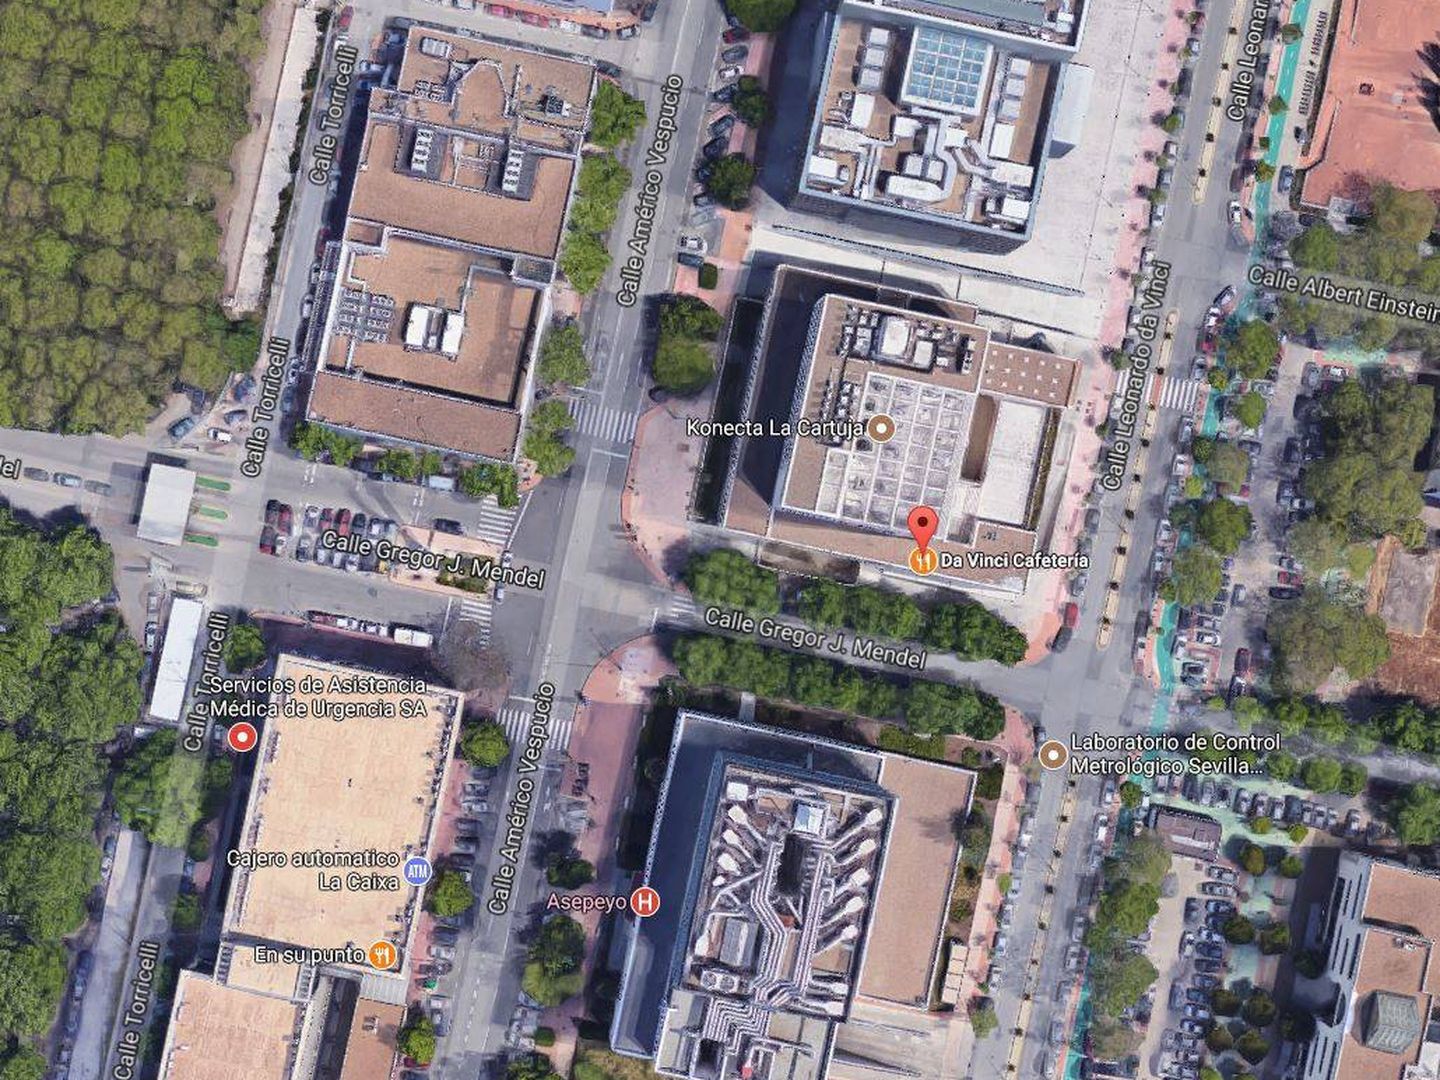 Vista aérea del edificio del Litri en Sevilla. (Google)